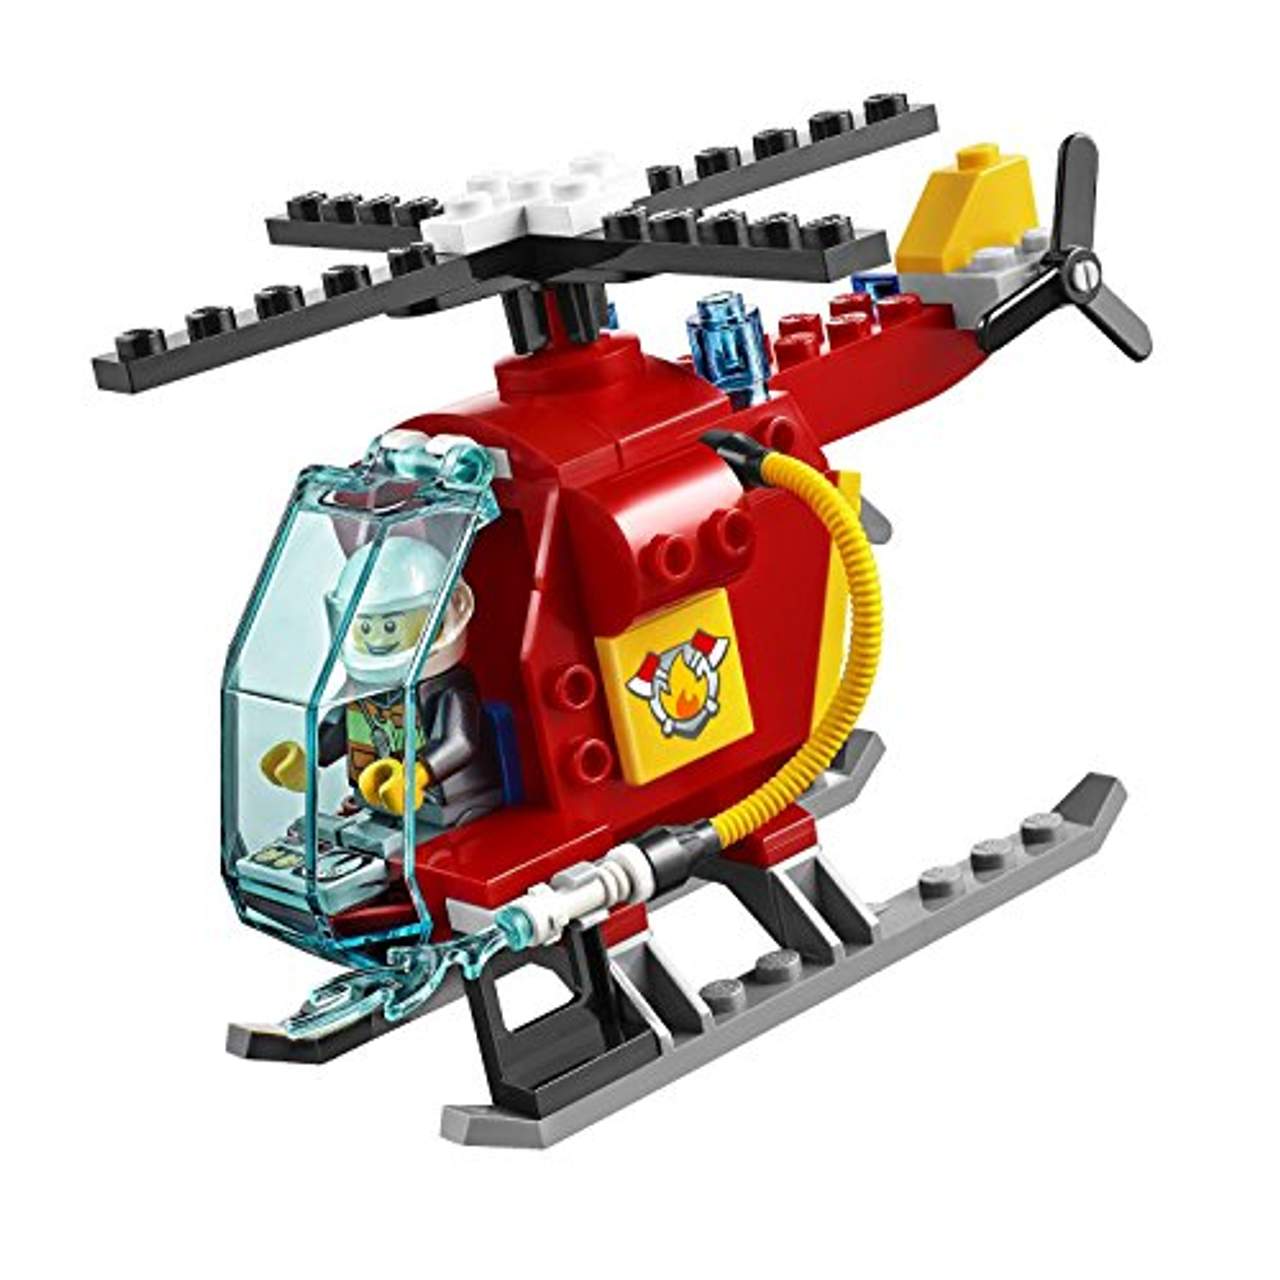 LEGO Juniors 10685 Feuerwehr